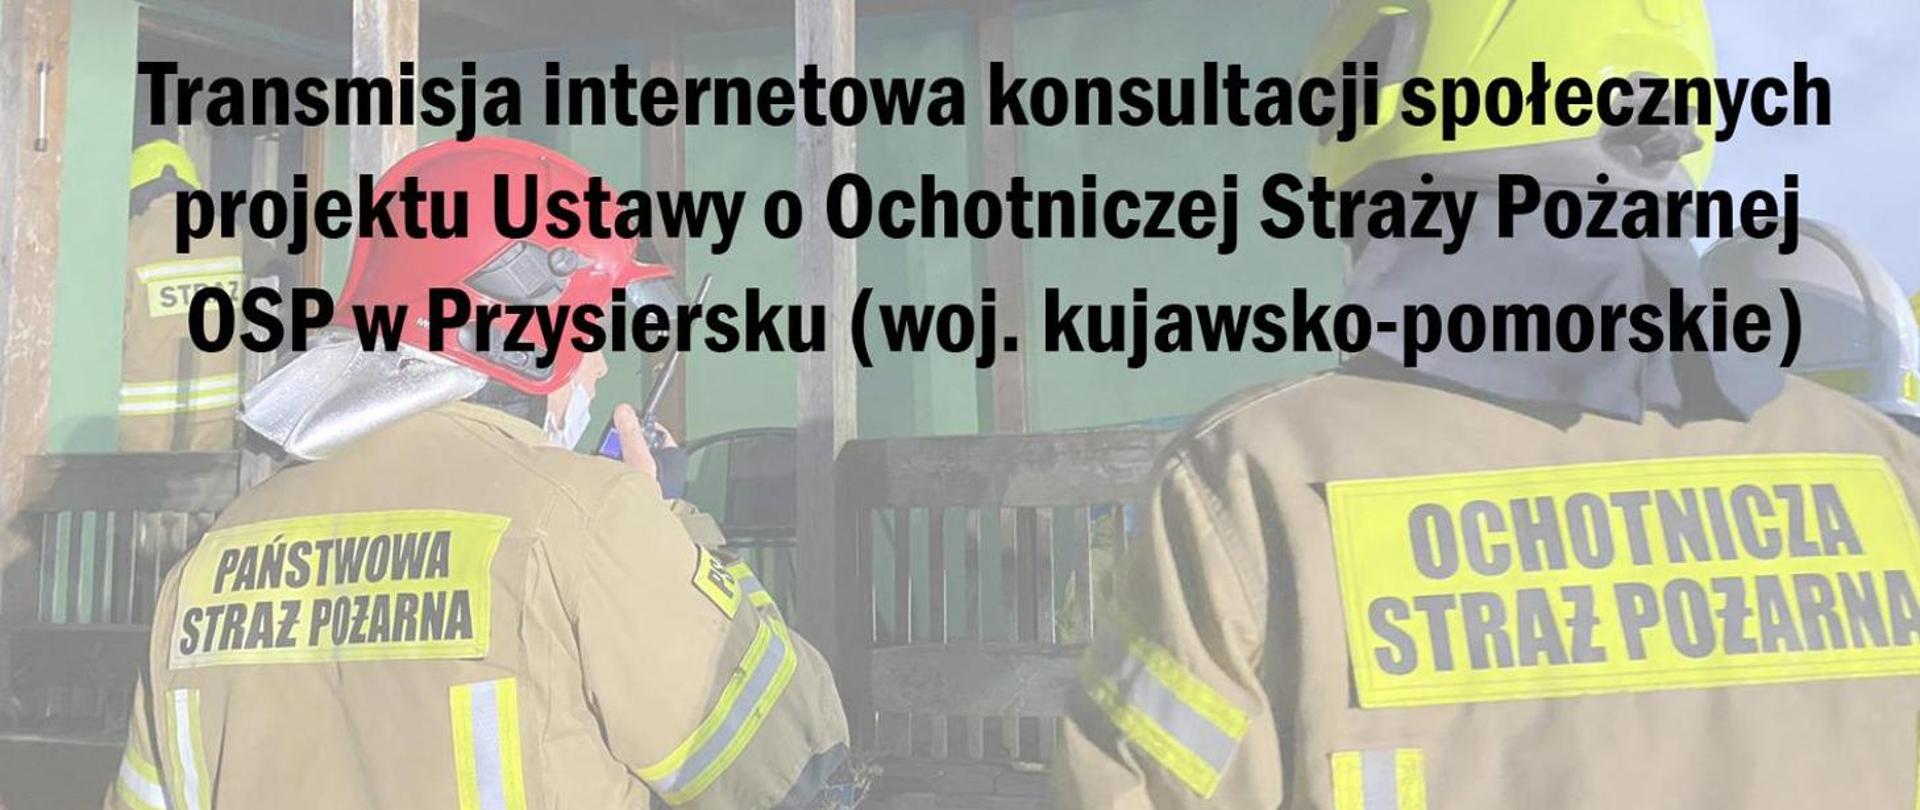 Transmisja internetowa konsultacji społecznych projektu Ustawy o Ochotniczej Straży Pożarnej OSP w Przysiersku